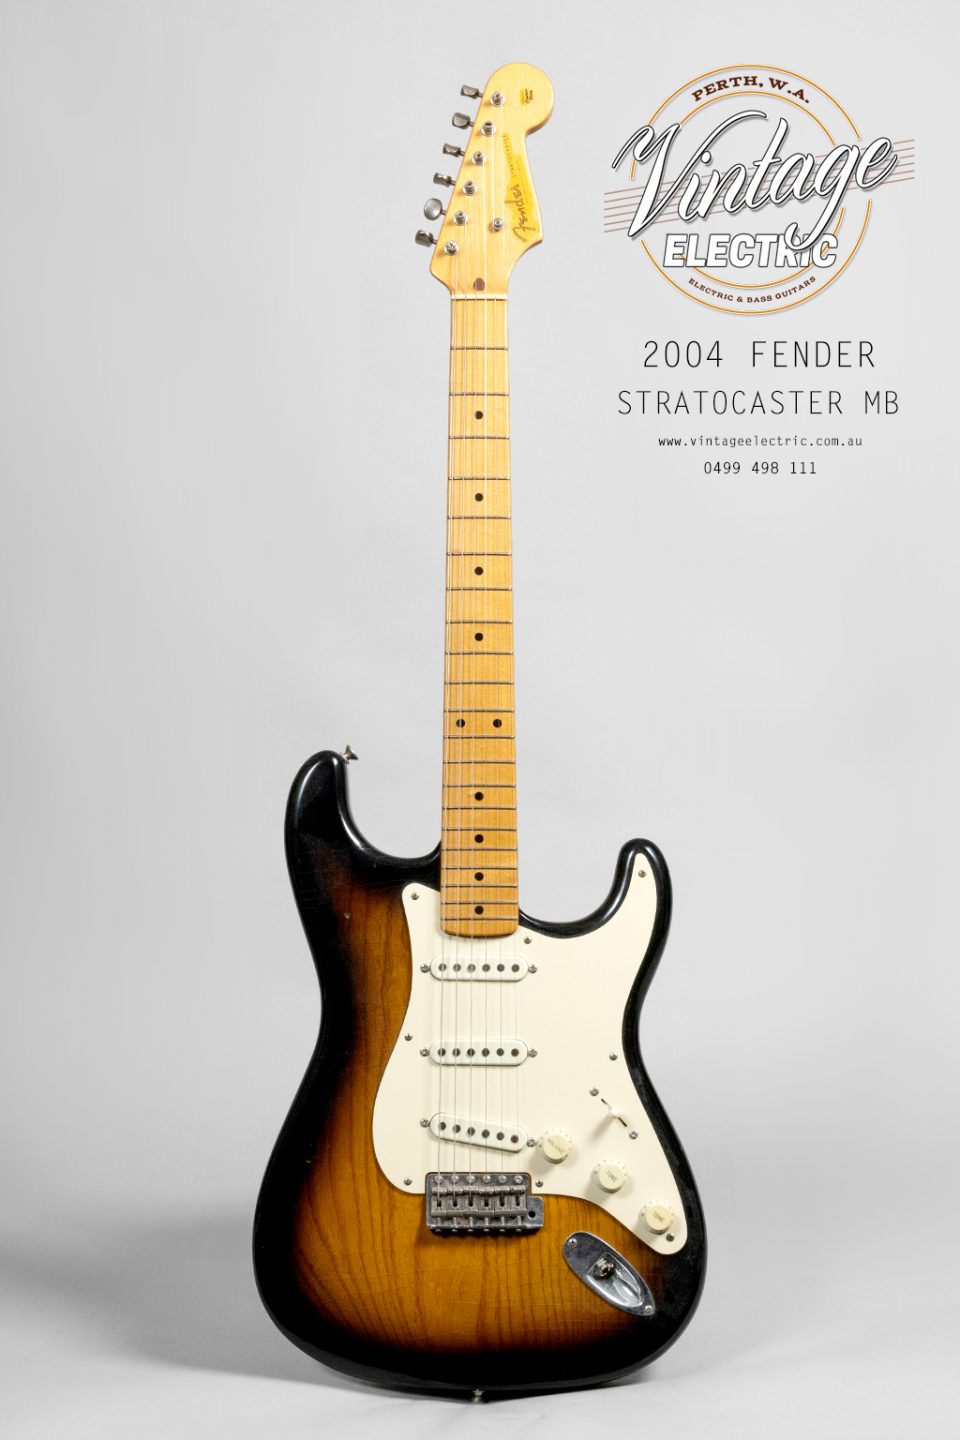 2004 Fender Stratocaster MB Guitar